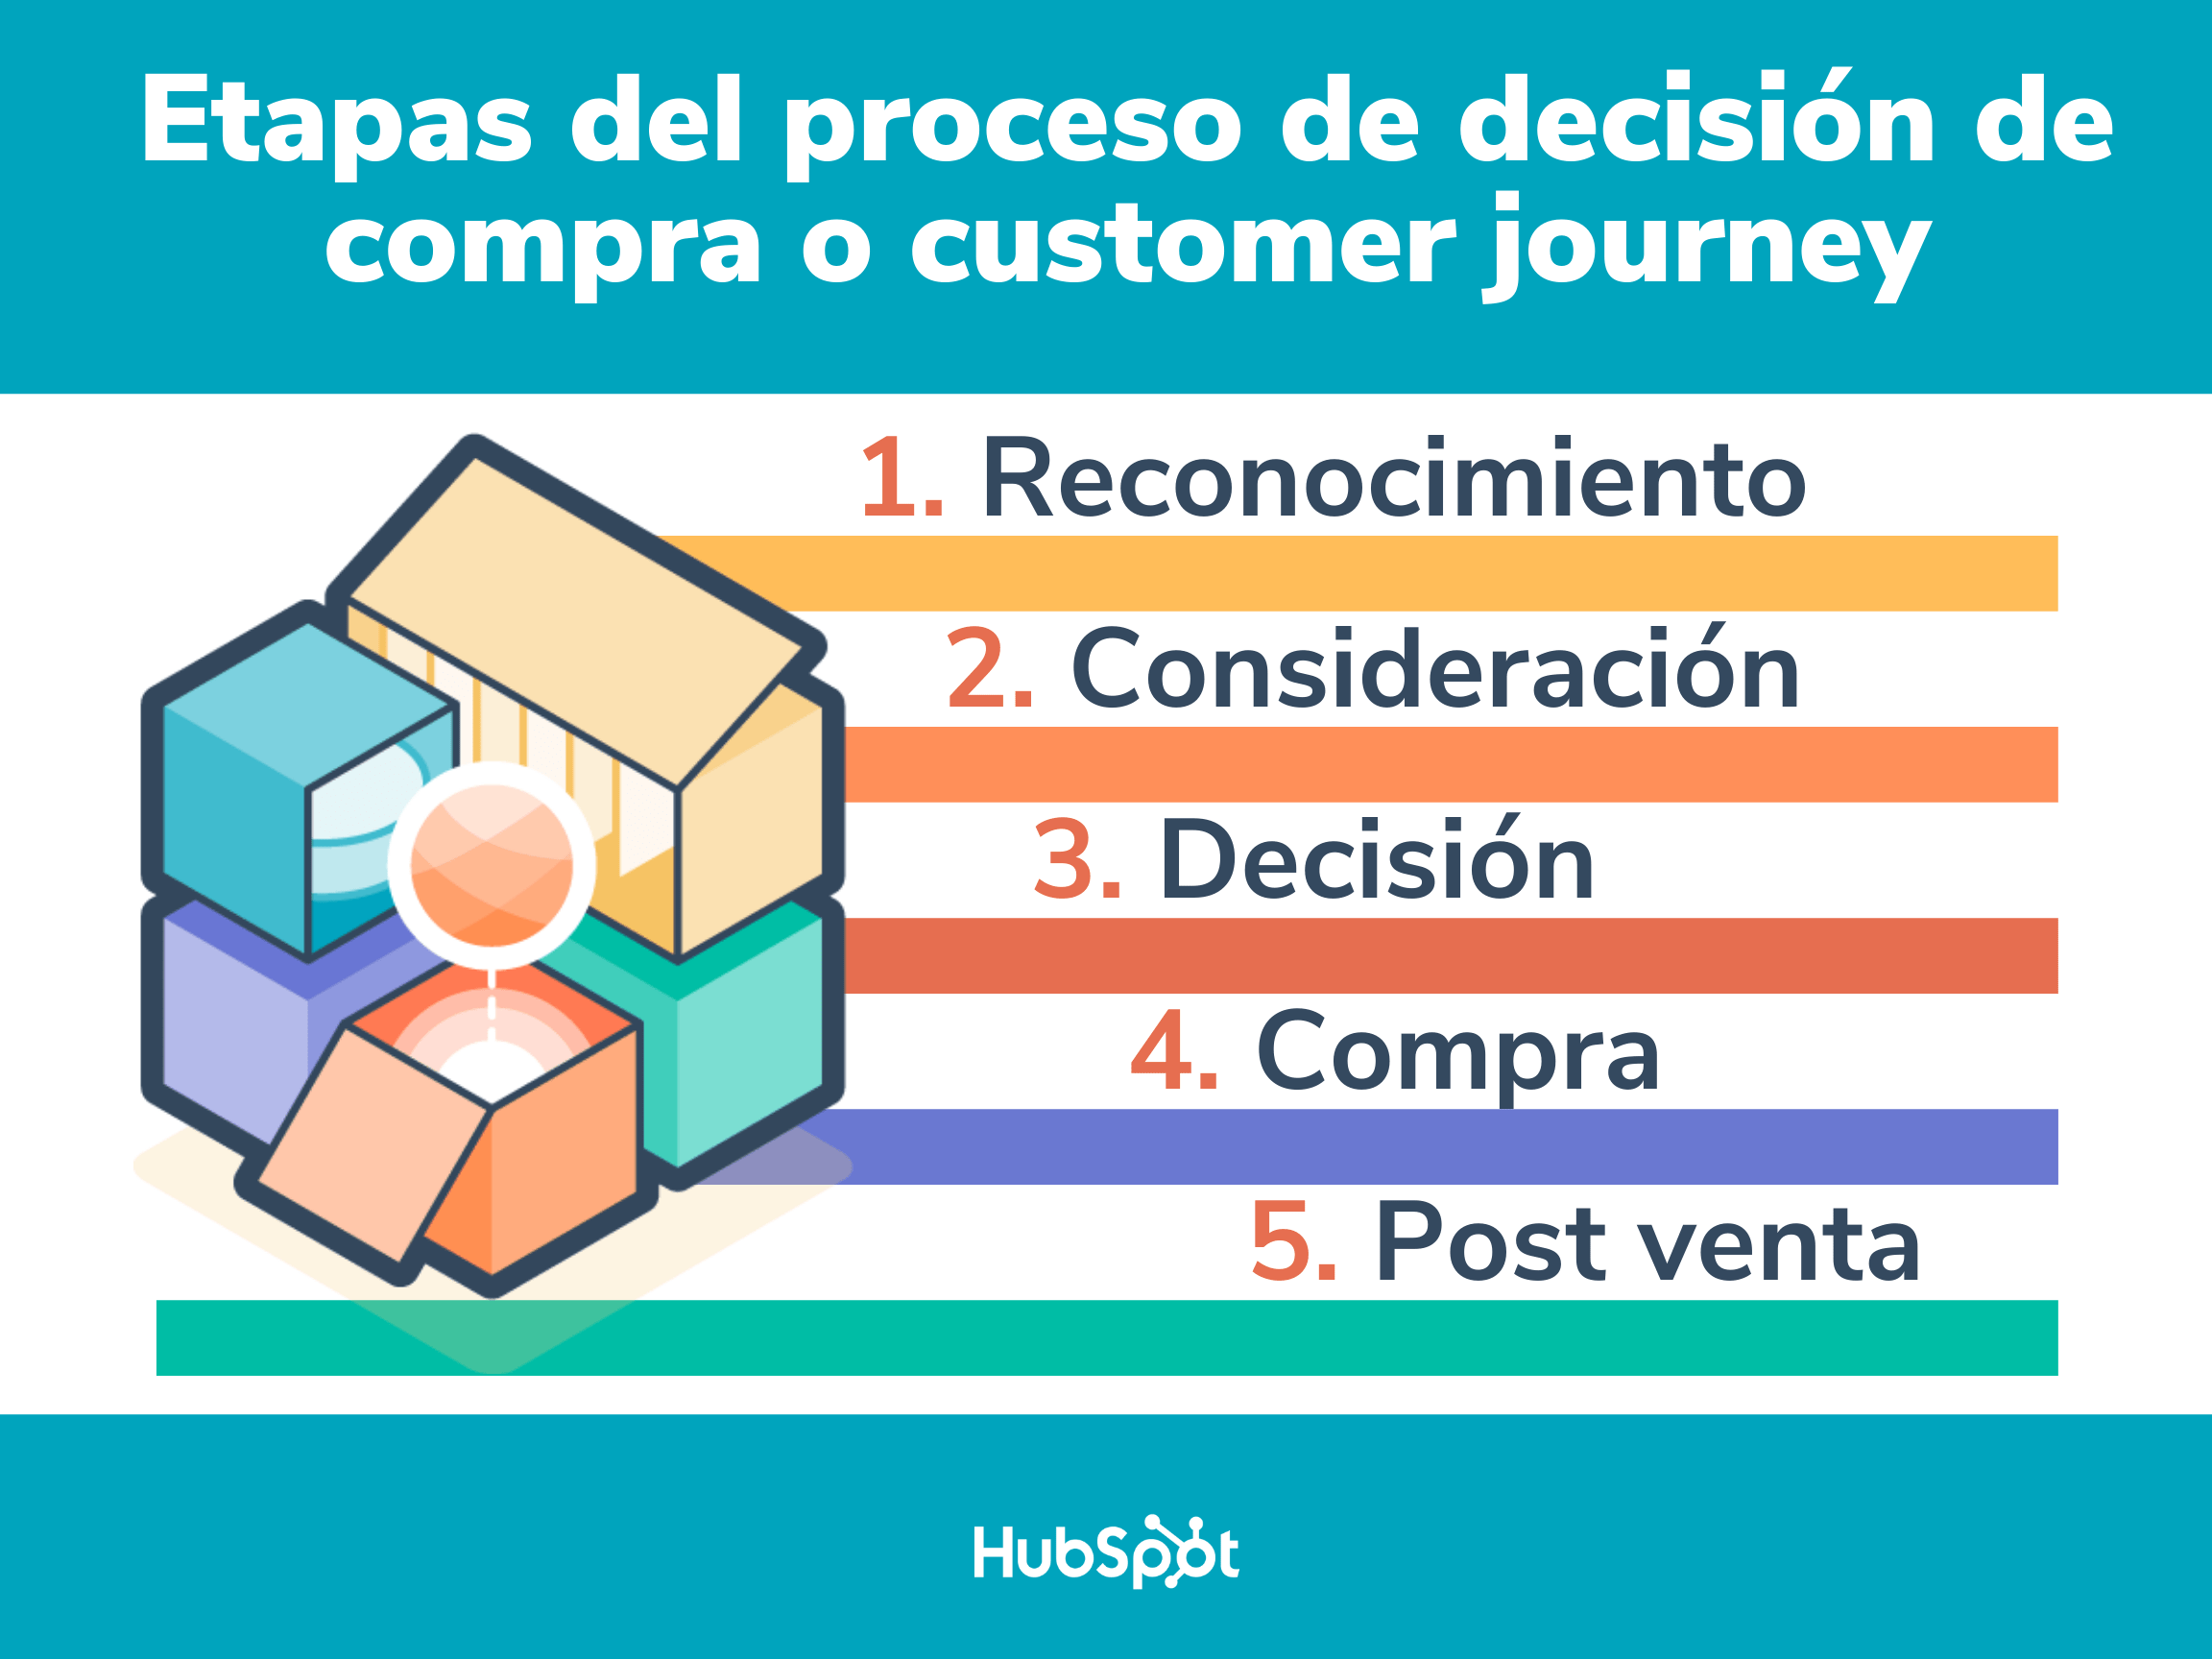 Customer Journey Las 5 Etapas Del Proceso De Decisión De Compra